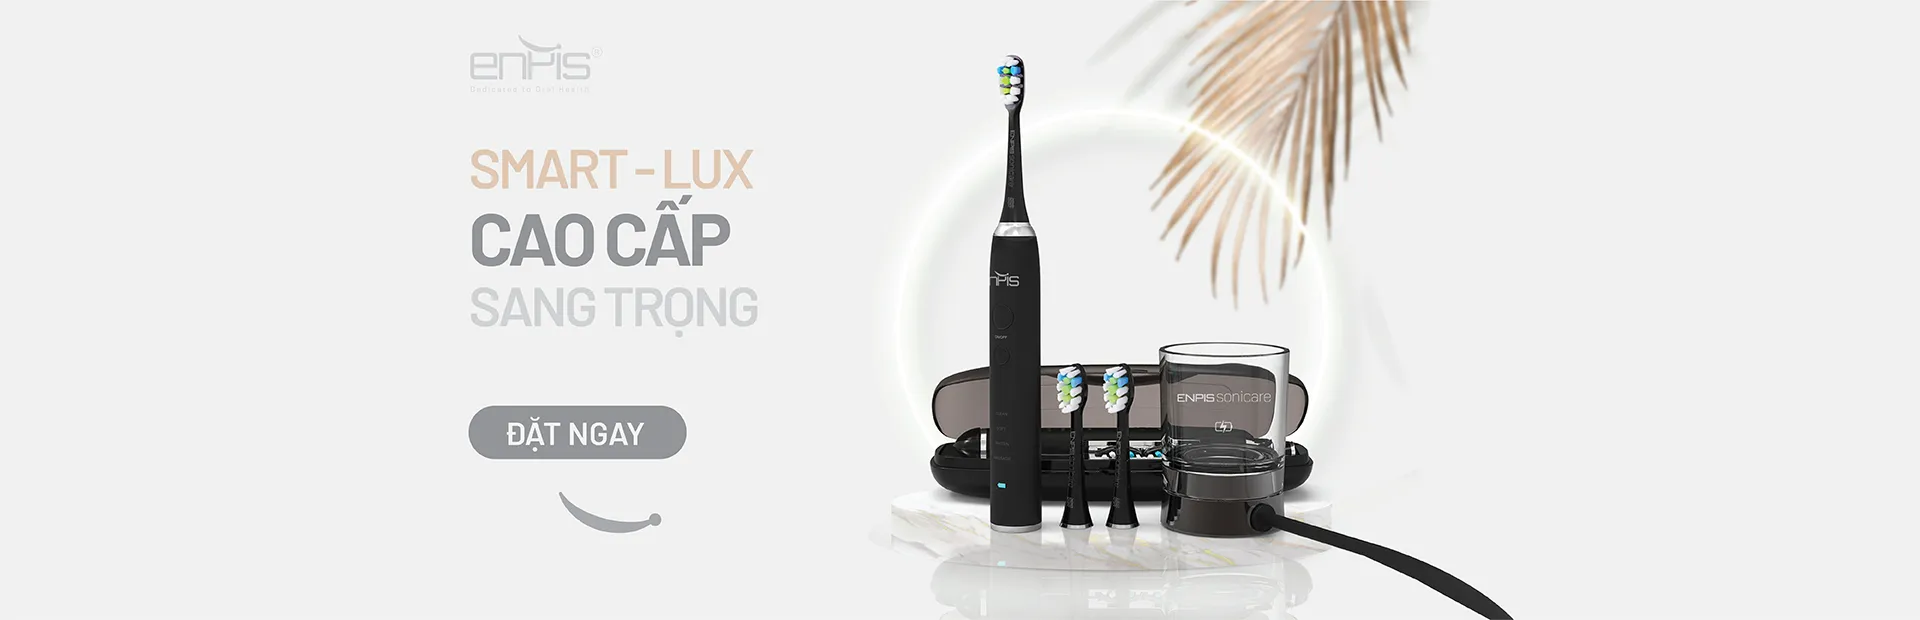 Bàn chải điện Smart-Lux chính hãng ENPIS